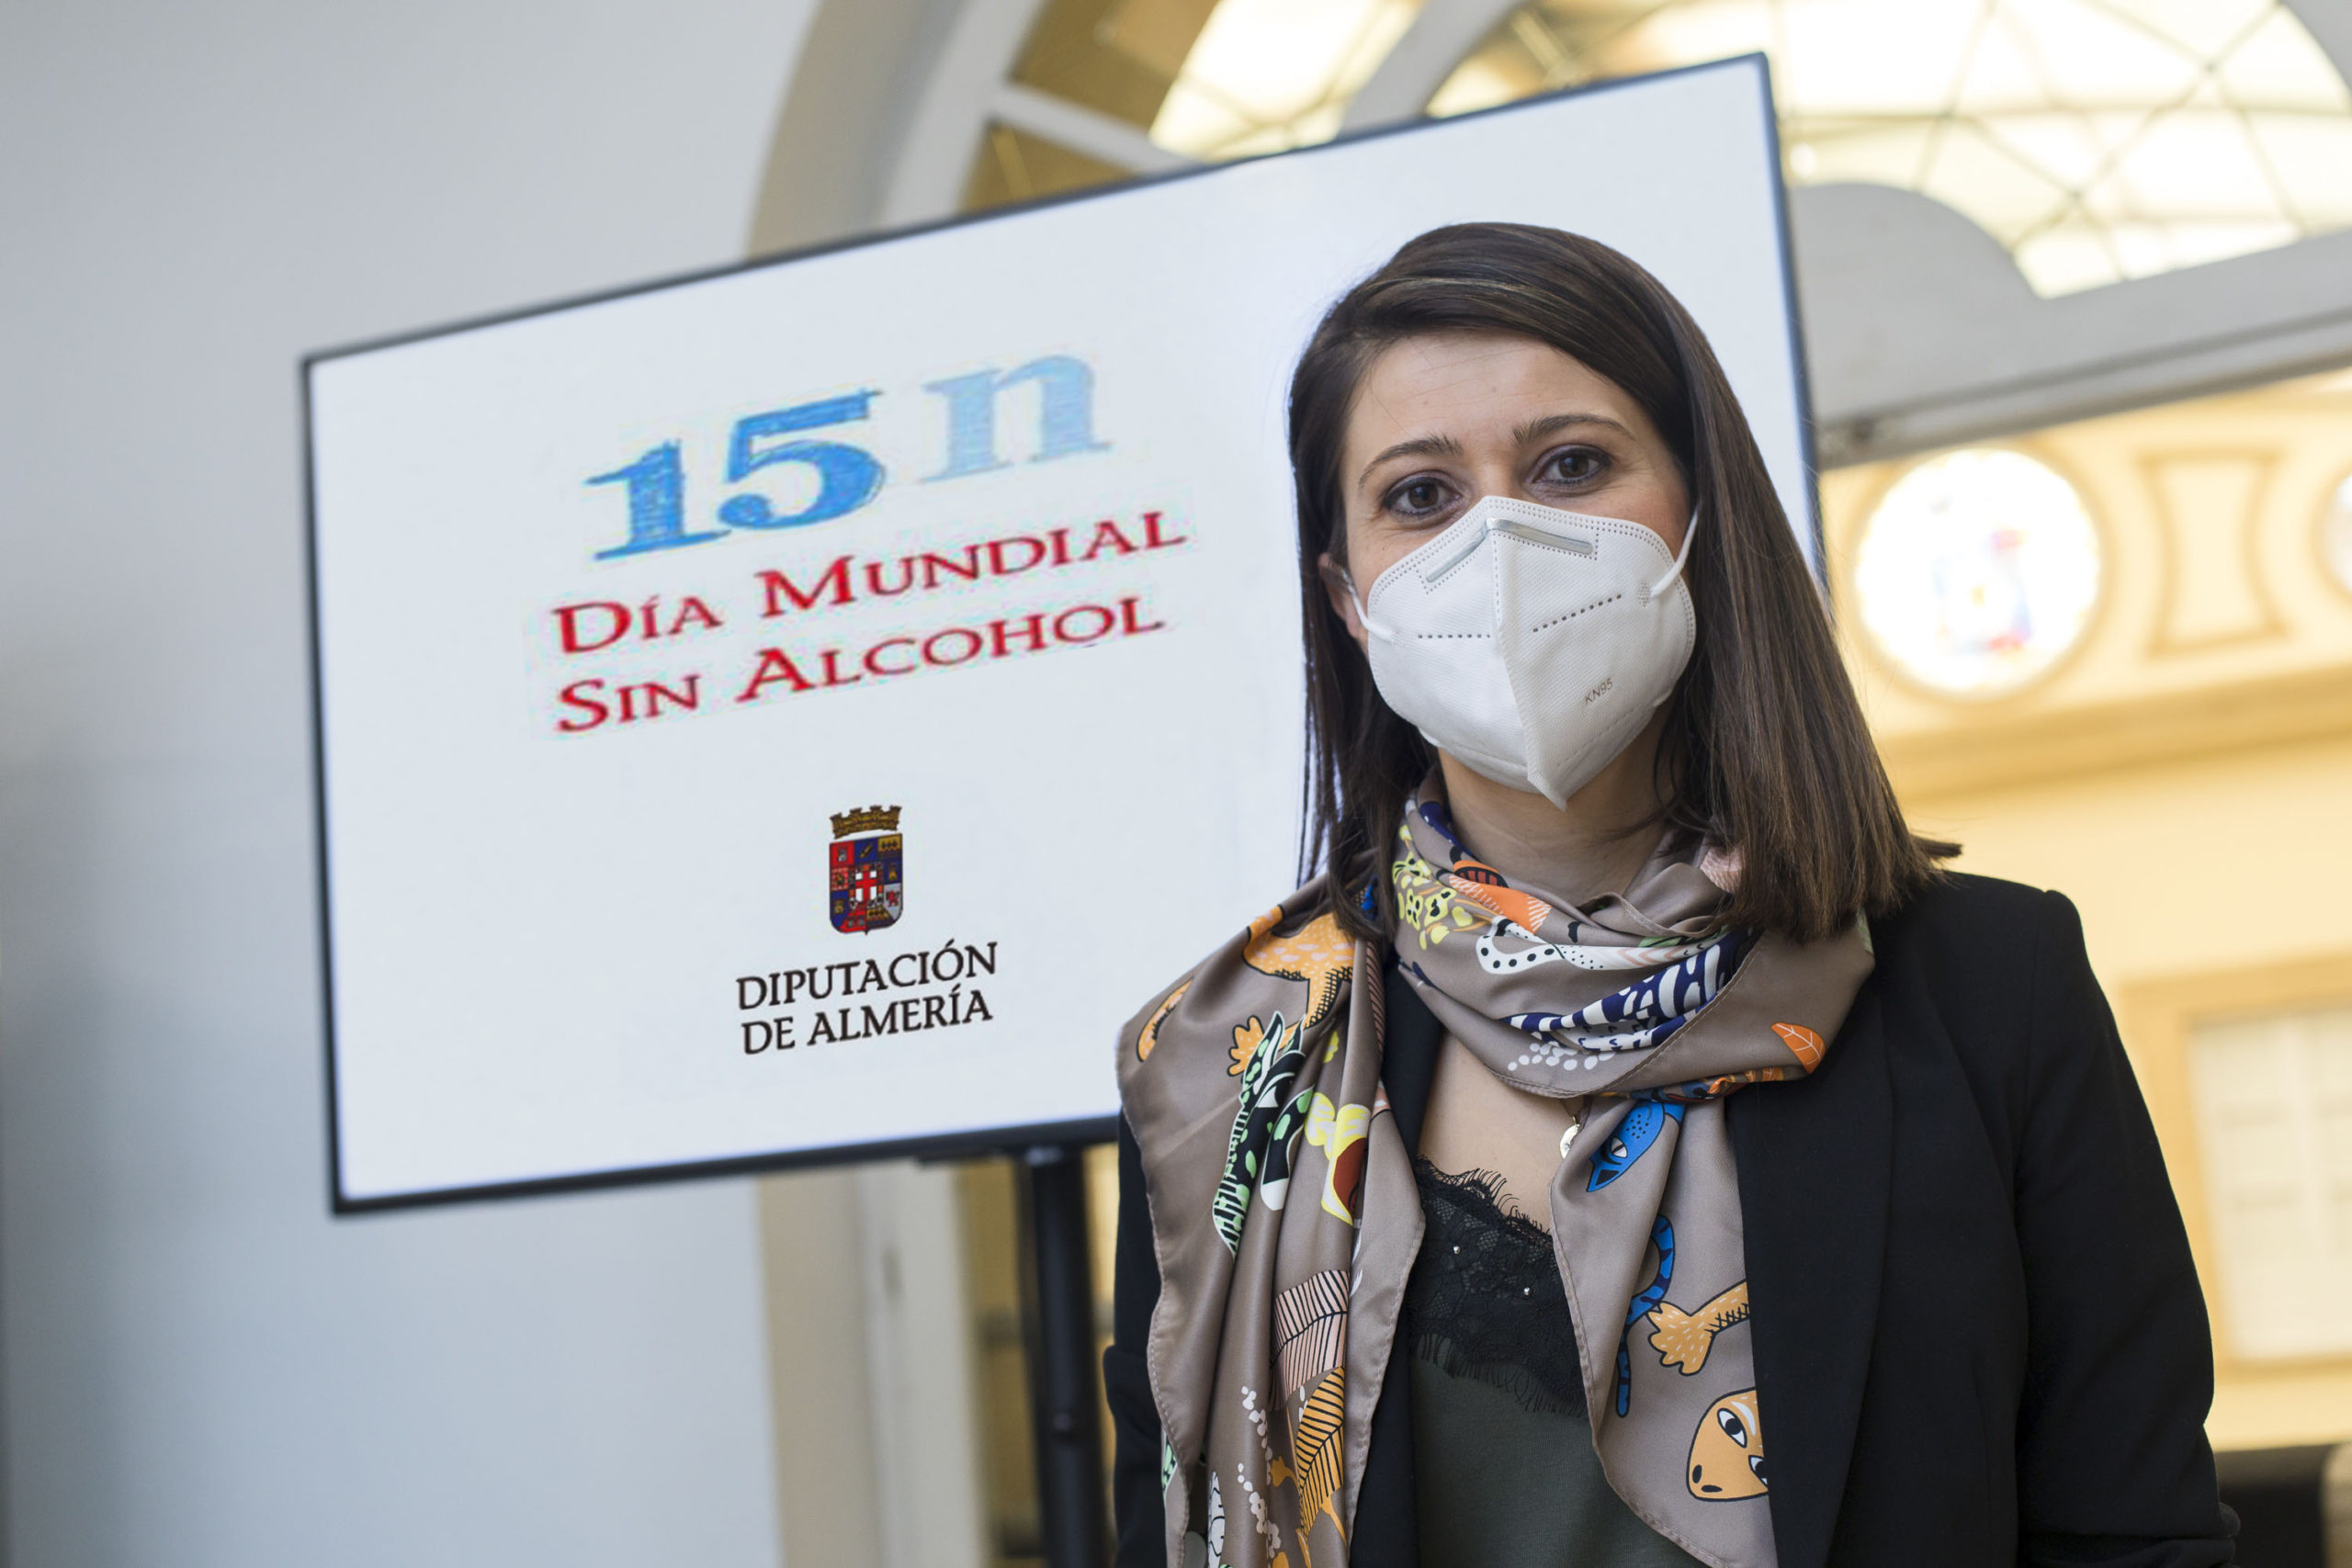 Diputación inicia una campaña para concienciar sobre el riesgo del abuso del alcohol durante la pandemia